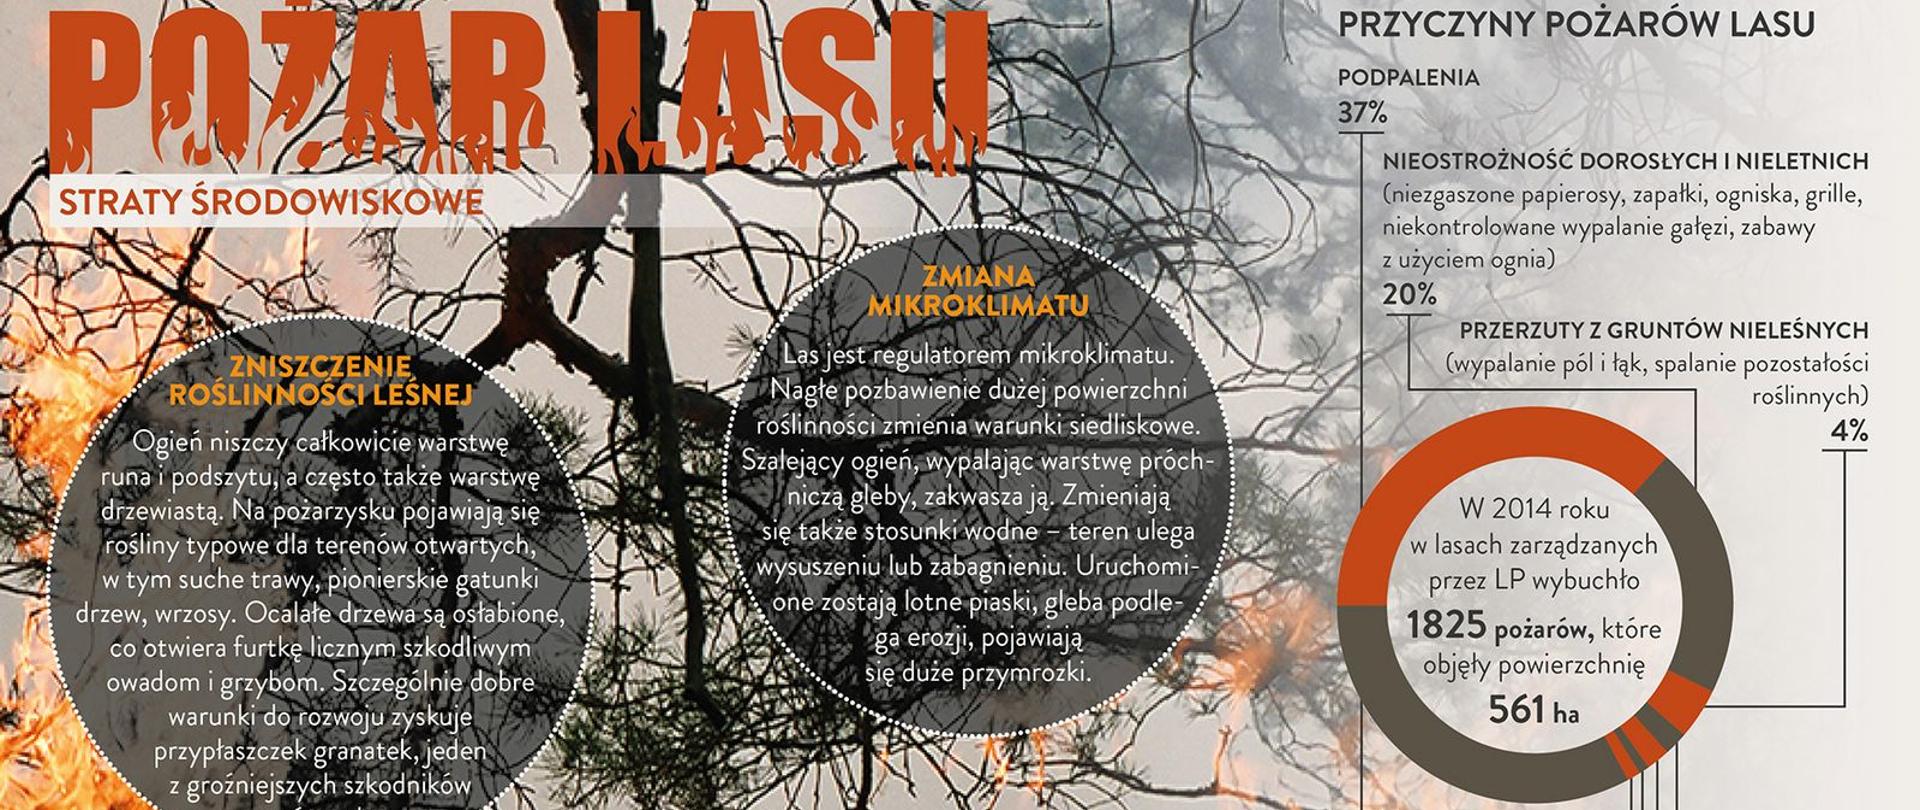 Na zdjęciu apel Nadleśnictwa Jarosław o niewypalanie traw w związku z pożarami lasów